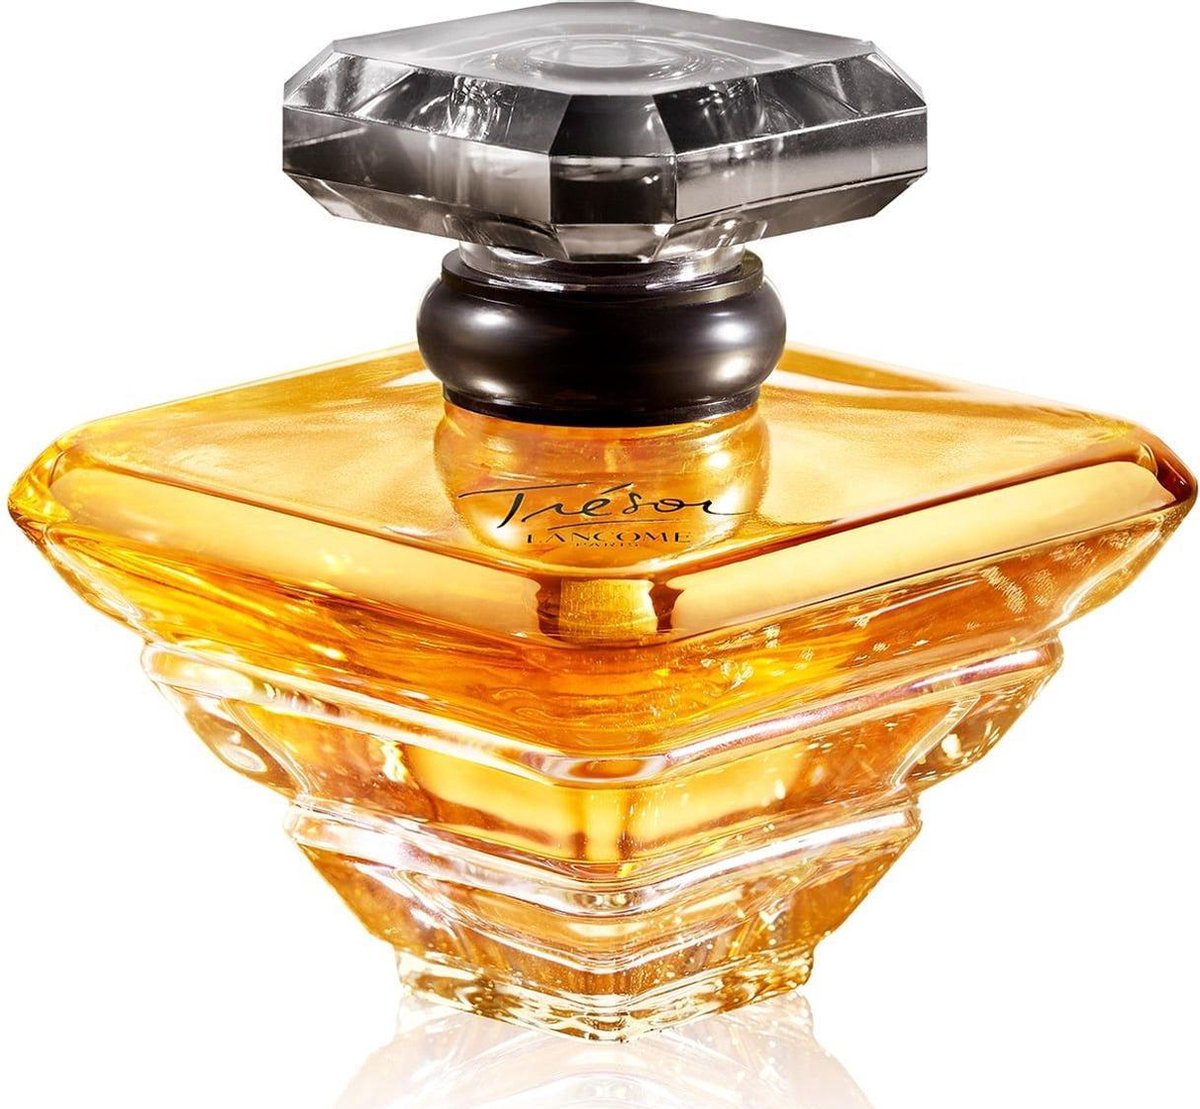 Lanc“me Tr‚sor Limited Edition Eau de parfum spray 50 ml